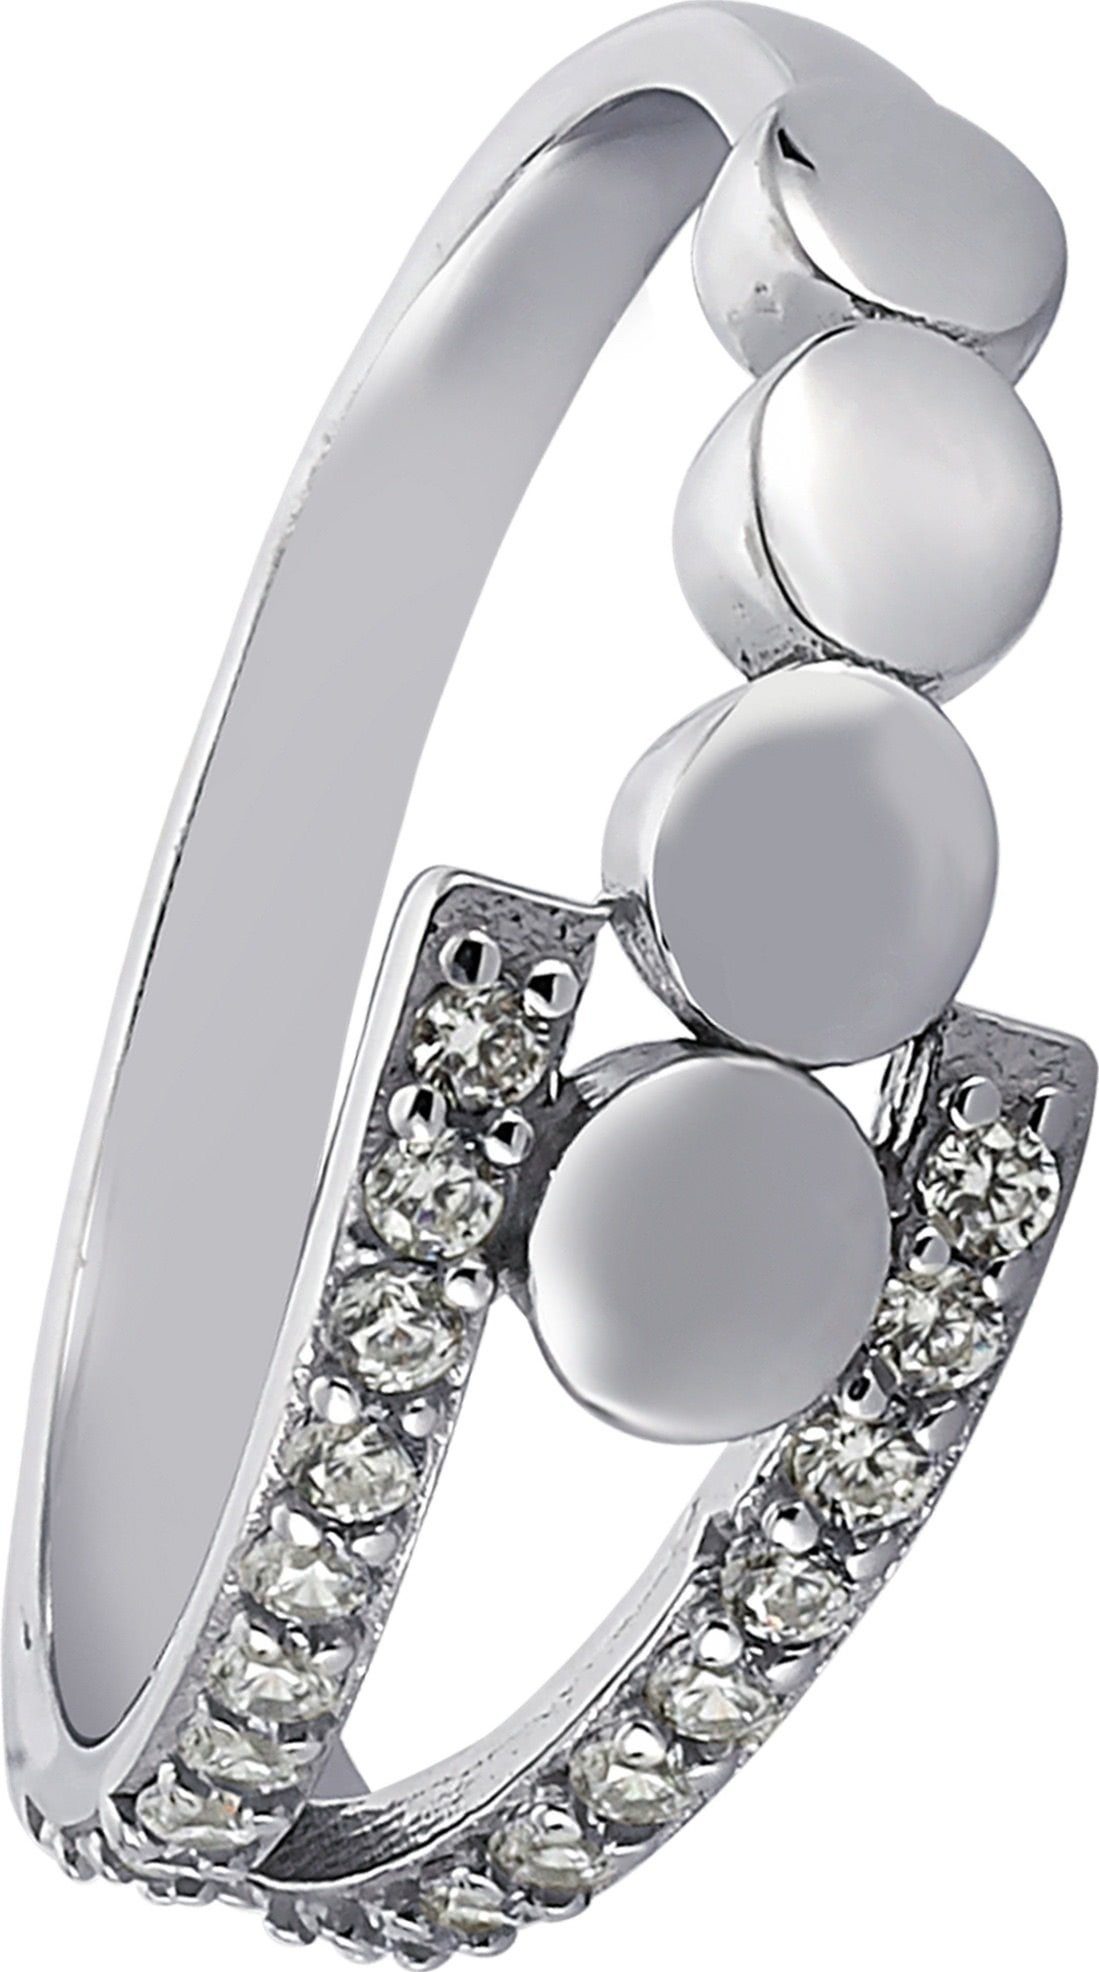 Balia Silberring Balia Ring für weißen Damen Damen Kreise, mit Ring (Fingerring), 925 Sterling Zirkonia 60 Silber (19,1)